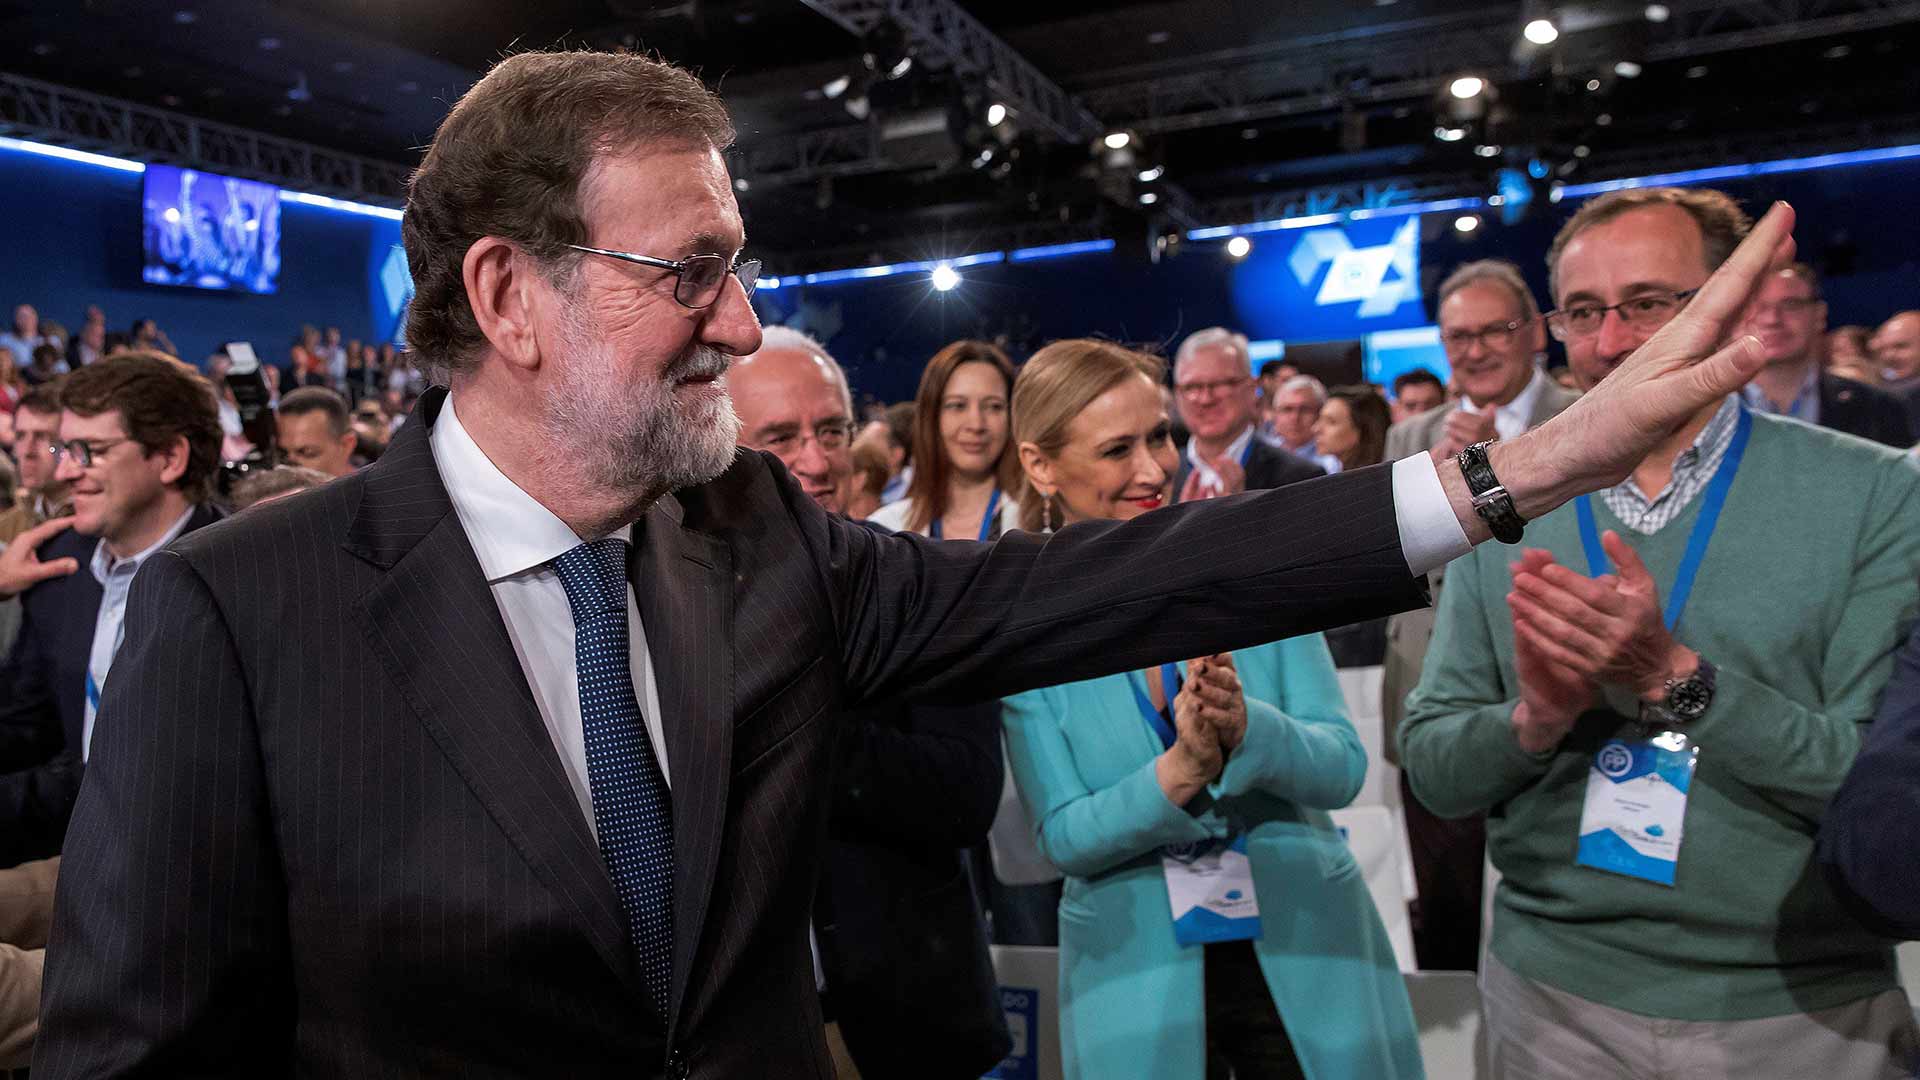 Rajoy arremete contra Ciudadanos acusándoles de «inexpertos lenguaraces» que no gobiernan y no tienen «ni idea de España»